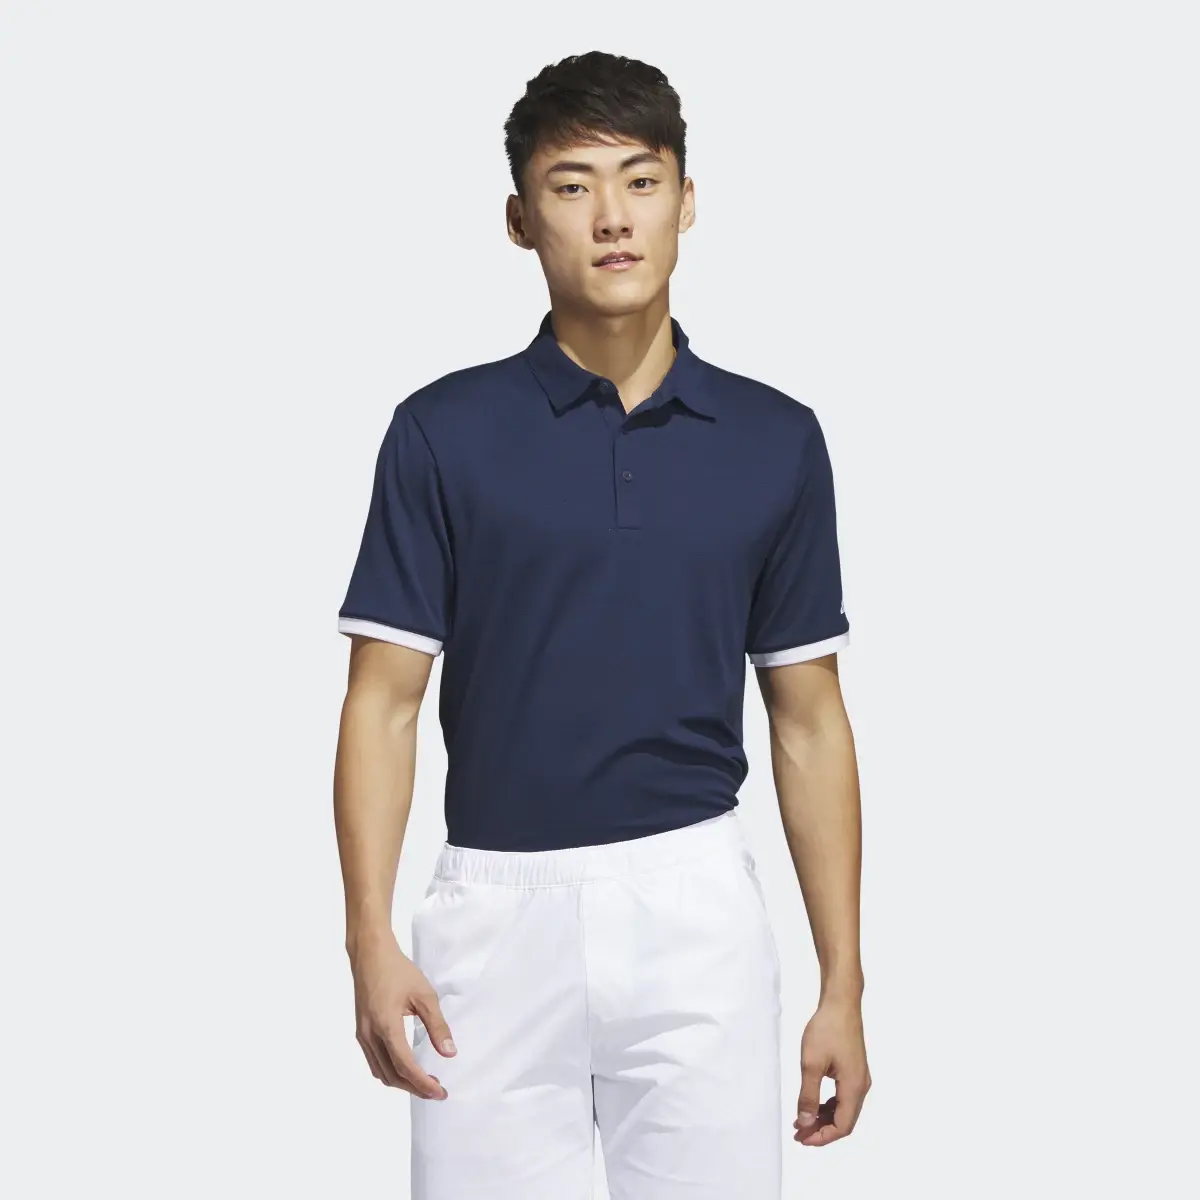 Adidas HEAT.RDY Golf Polo Shirt. 2